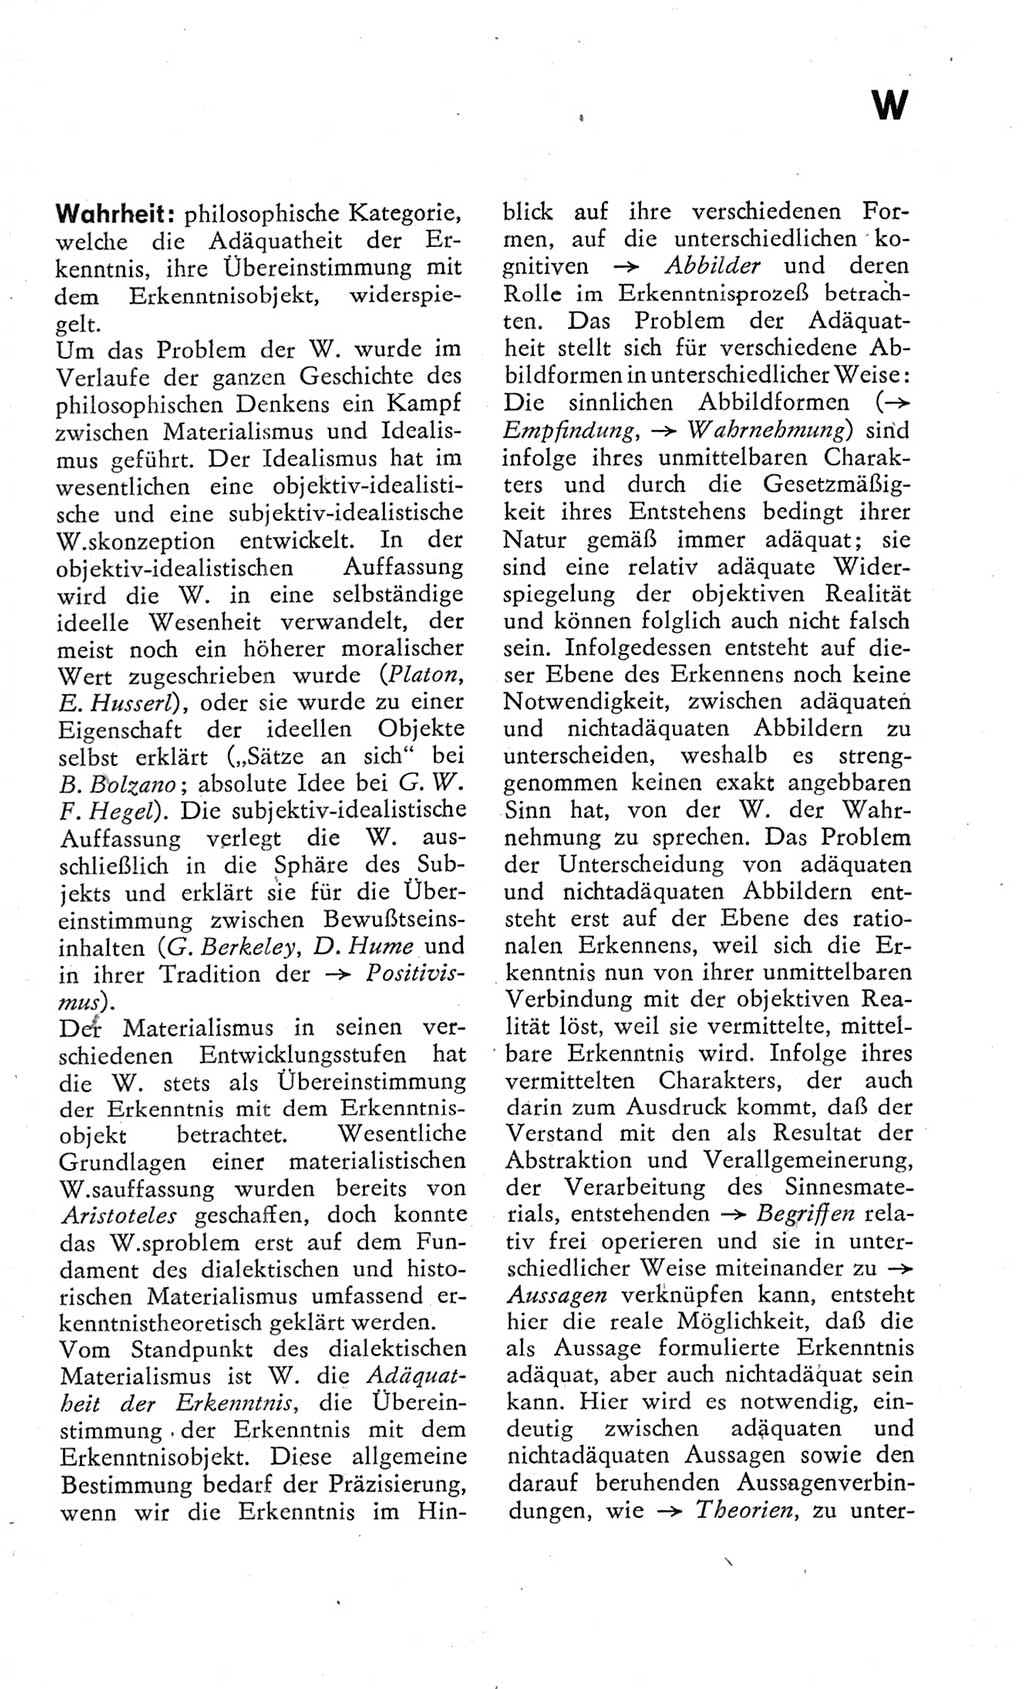 Kleines Wörterbuch der marxistisch-leninistischen Philosophie [Deutsche Demokratische Republik (DDR)] 1975, Seite 295 (Kl. Wb. ML Phil. DDR 1975, S. 295)